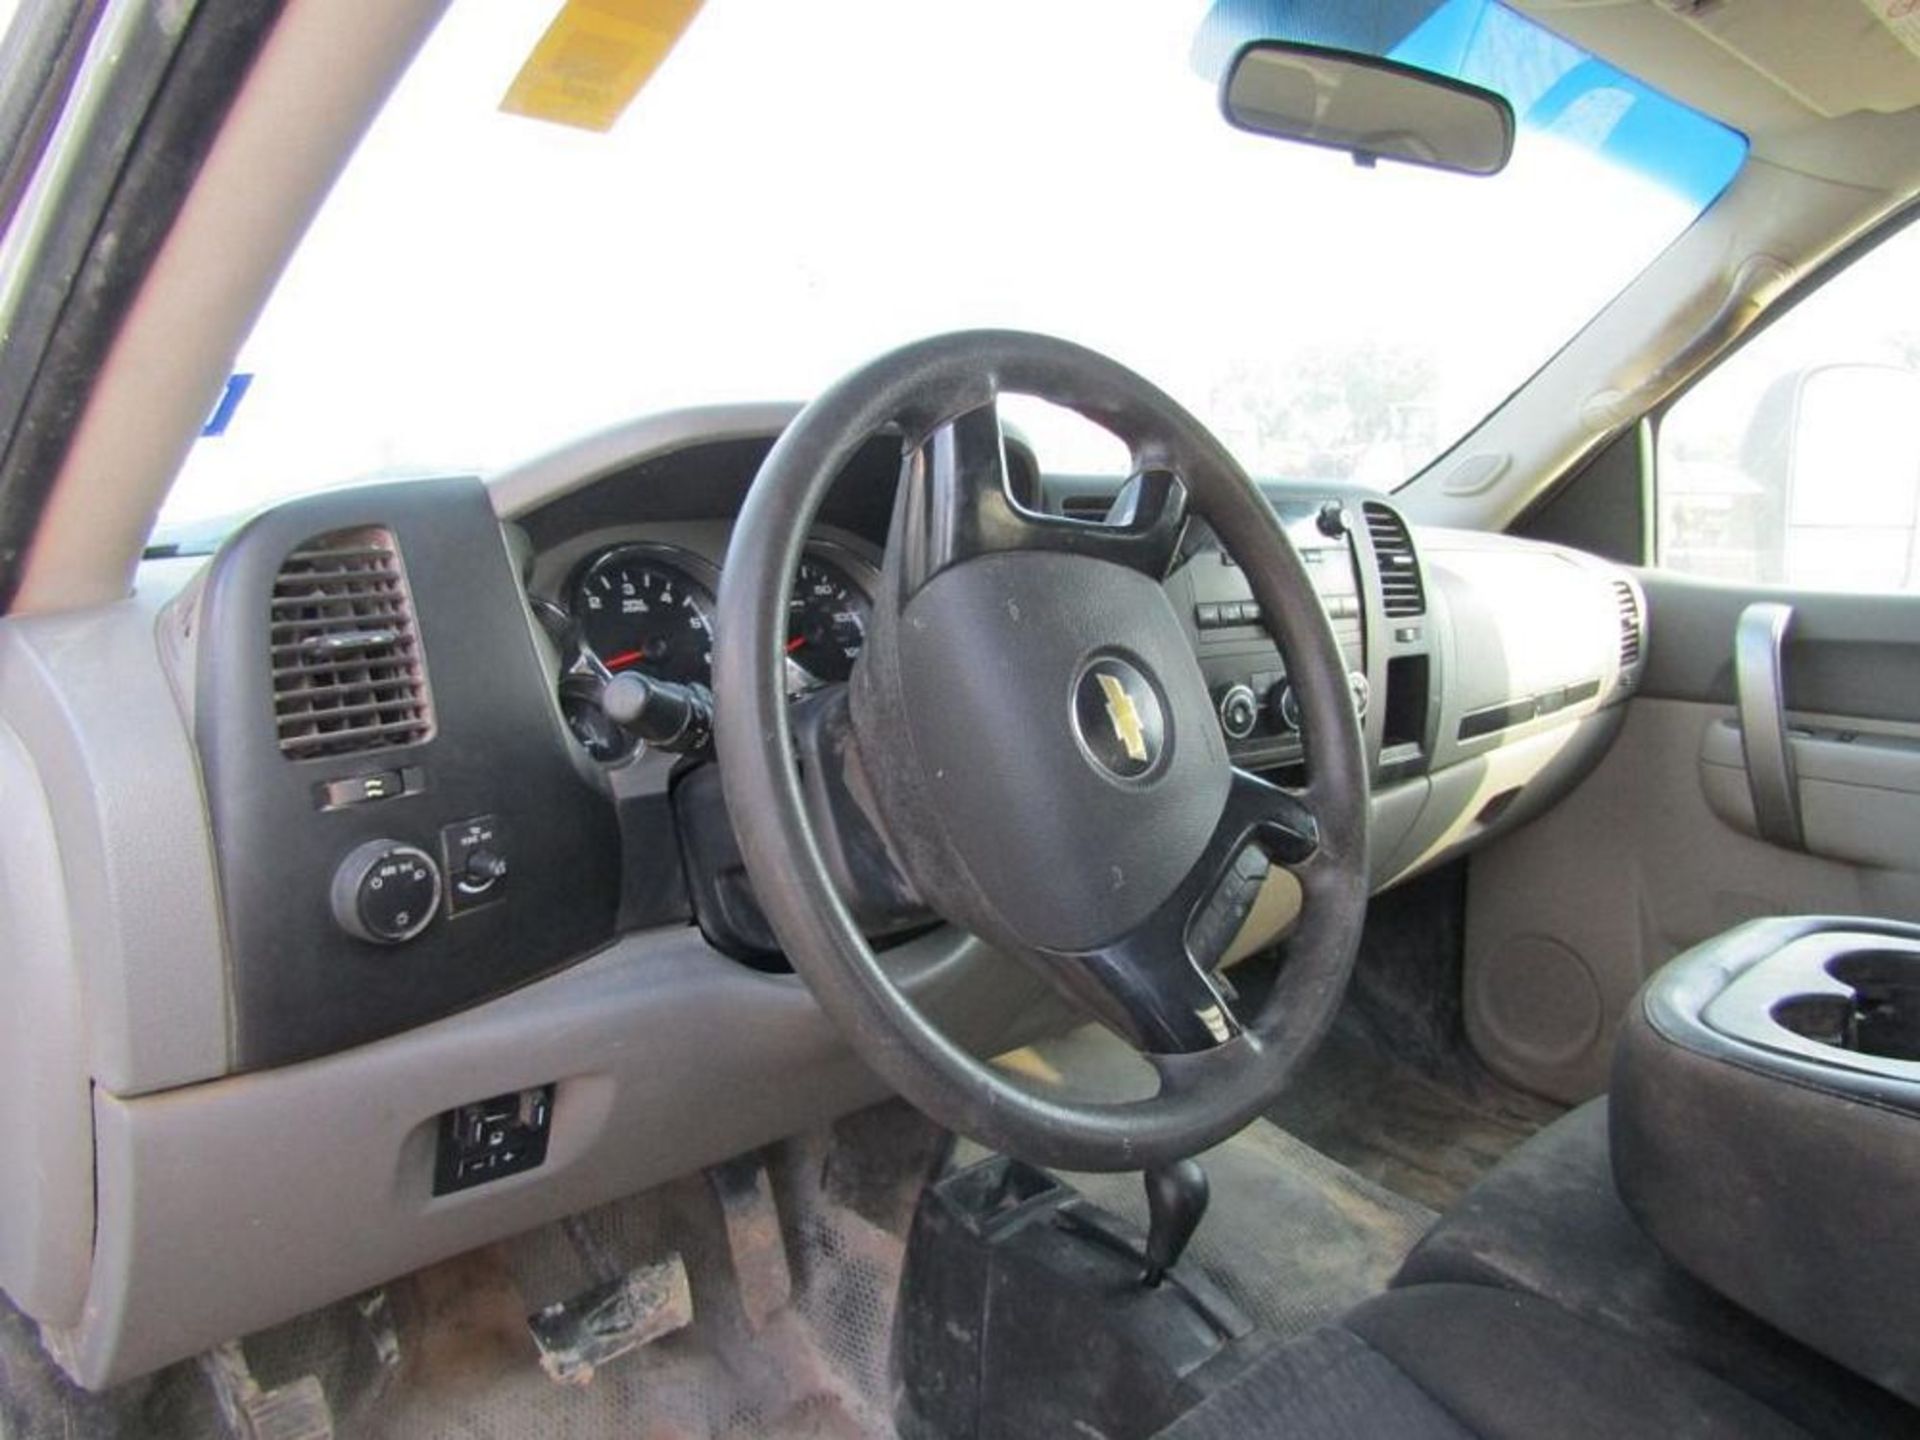 Chevrolet 3500 HD, Vortec, 4X4, Crew Cab, Steel Flat Bed Truck. VIN 1GB4KCGC9CF225435, #226 - Image 6 of 7